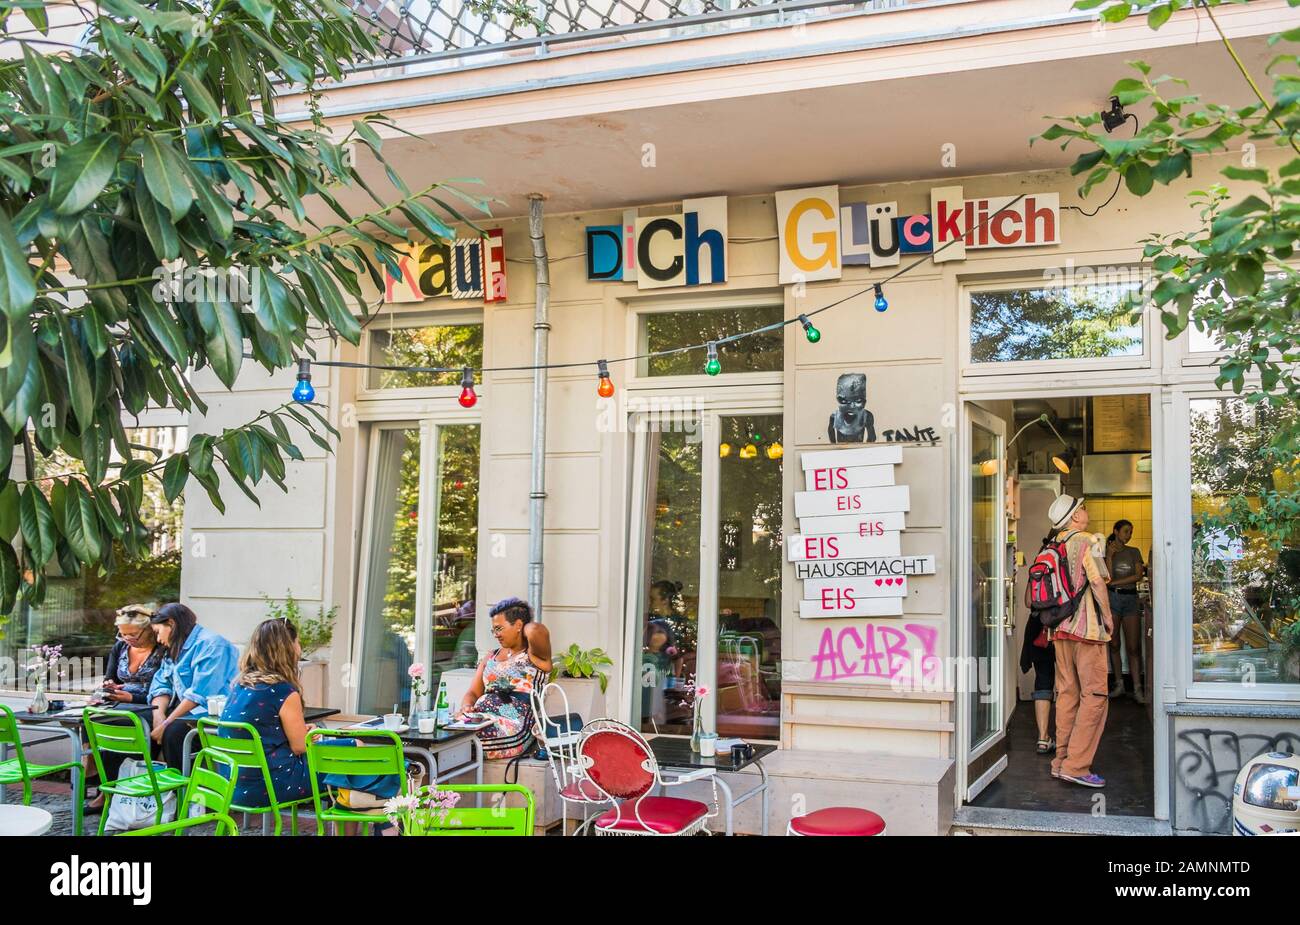 kauf dich gluecklich, cafe, ice cream parlour Stock Photo